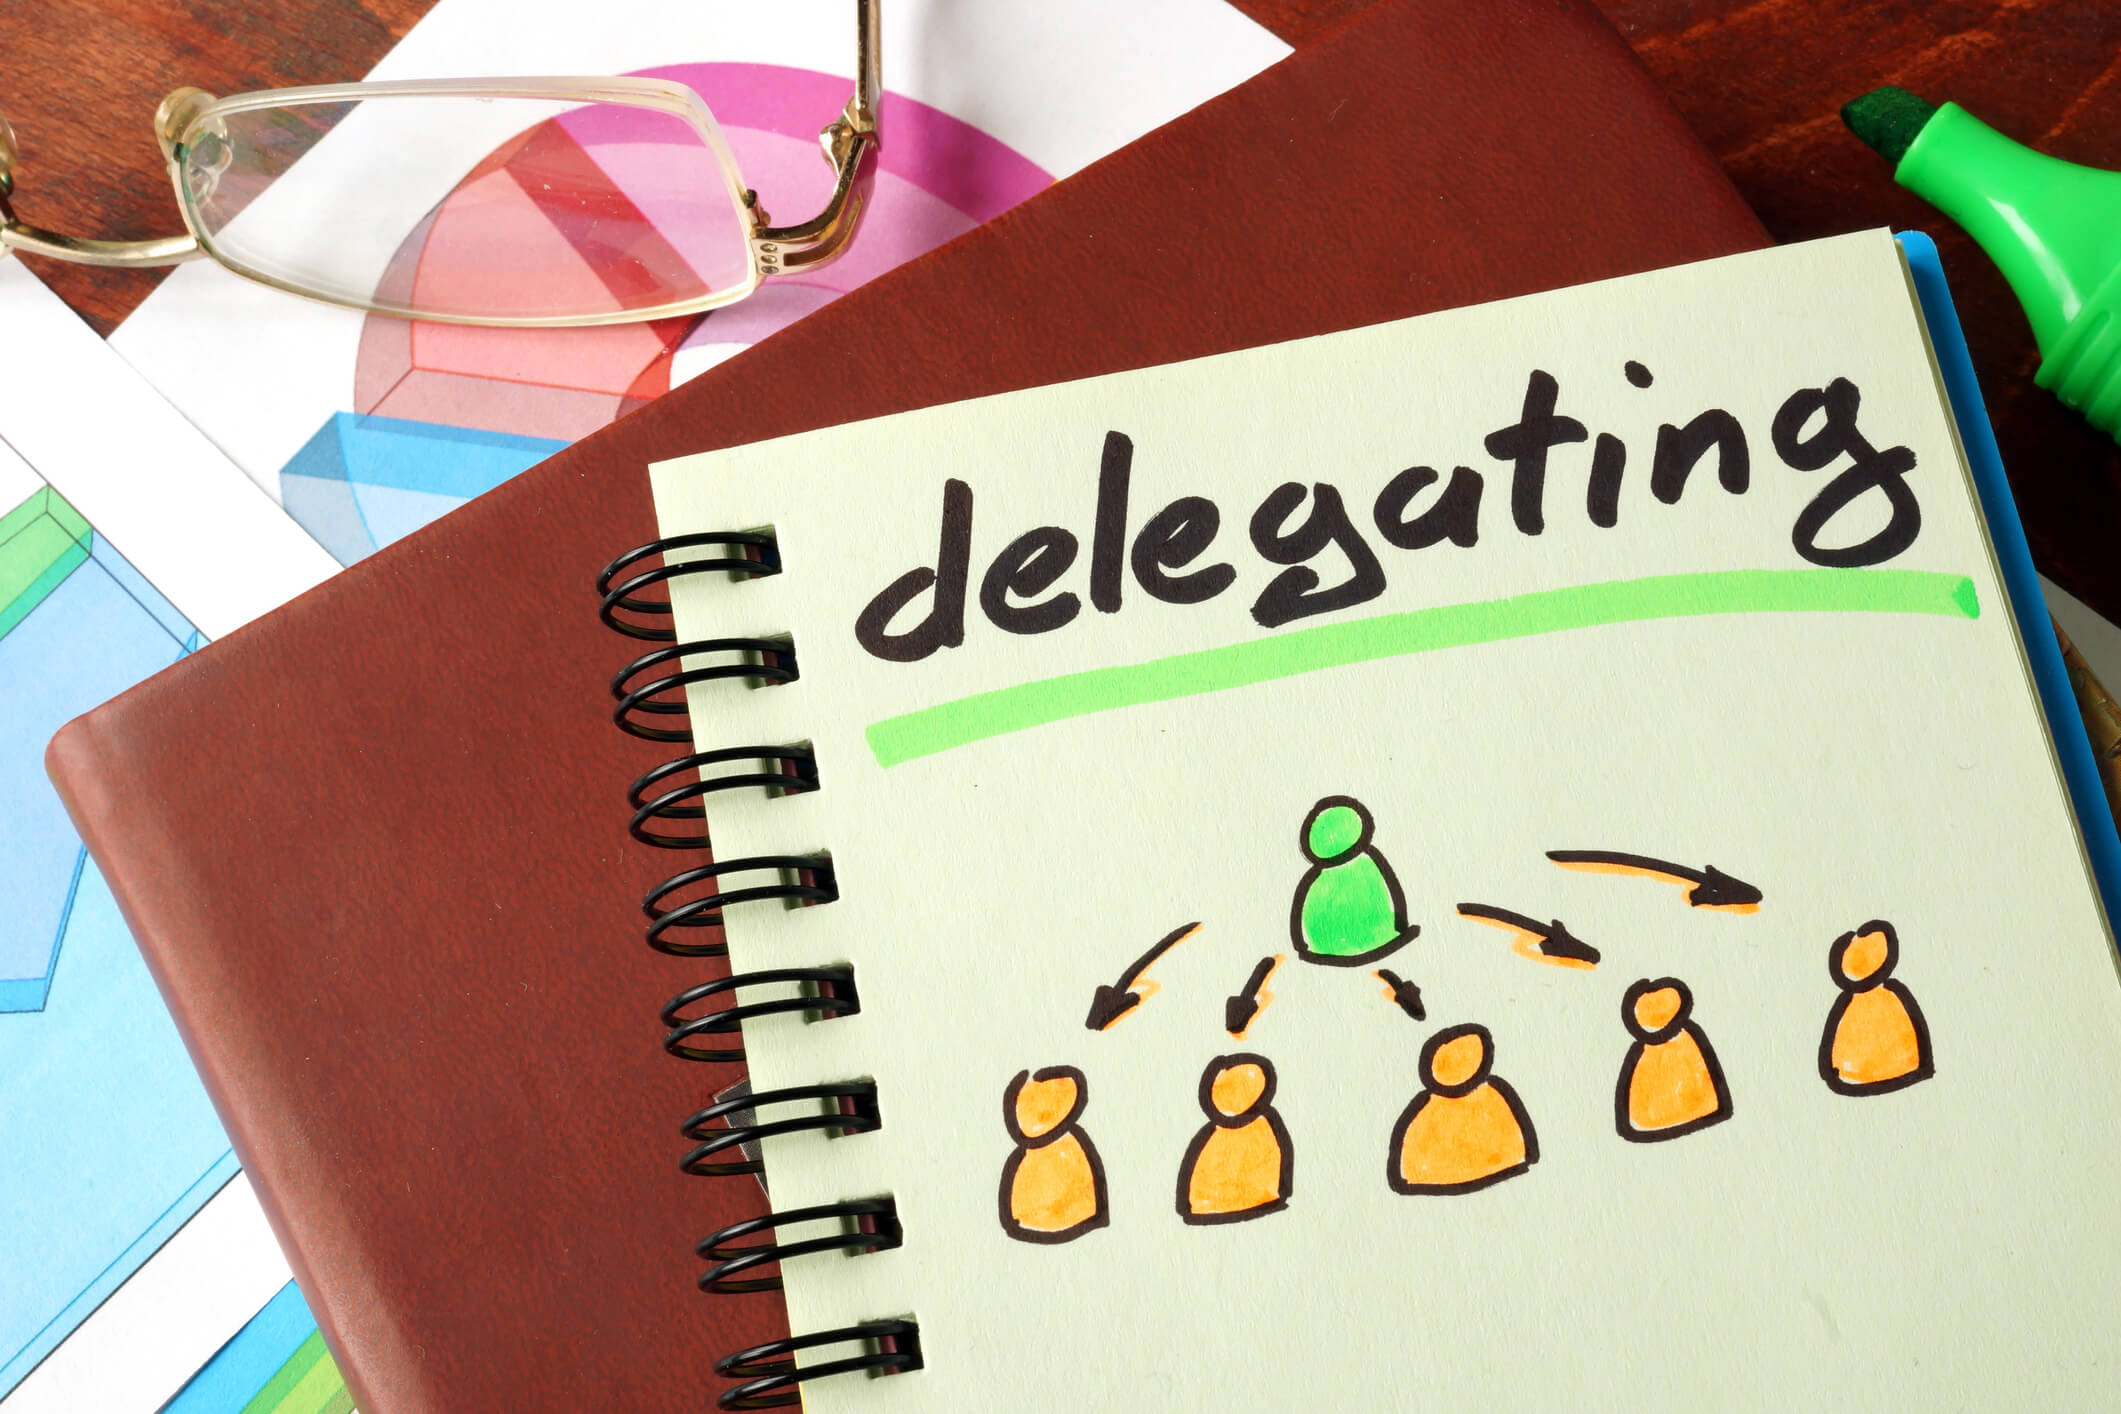 Effective Delegation - Complete Controller